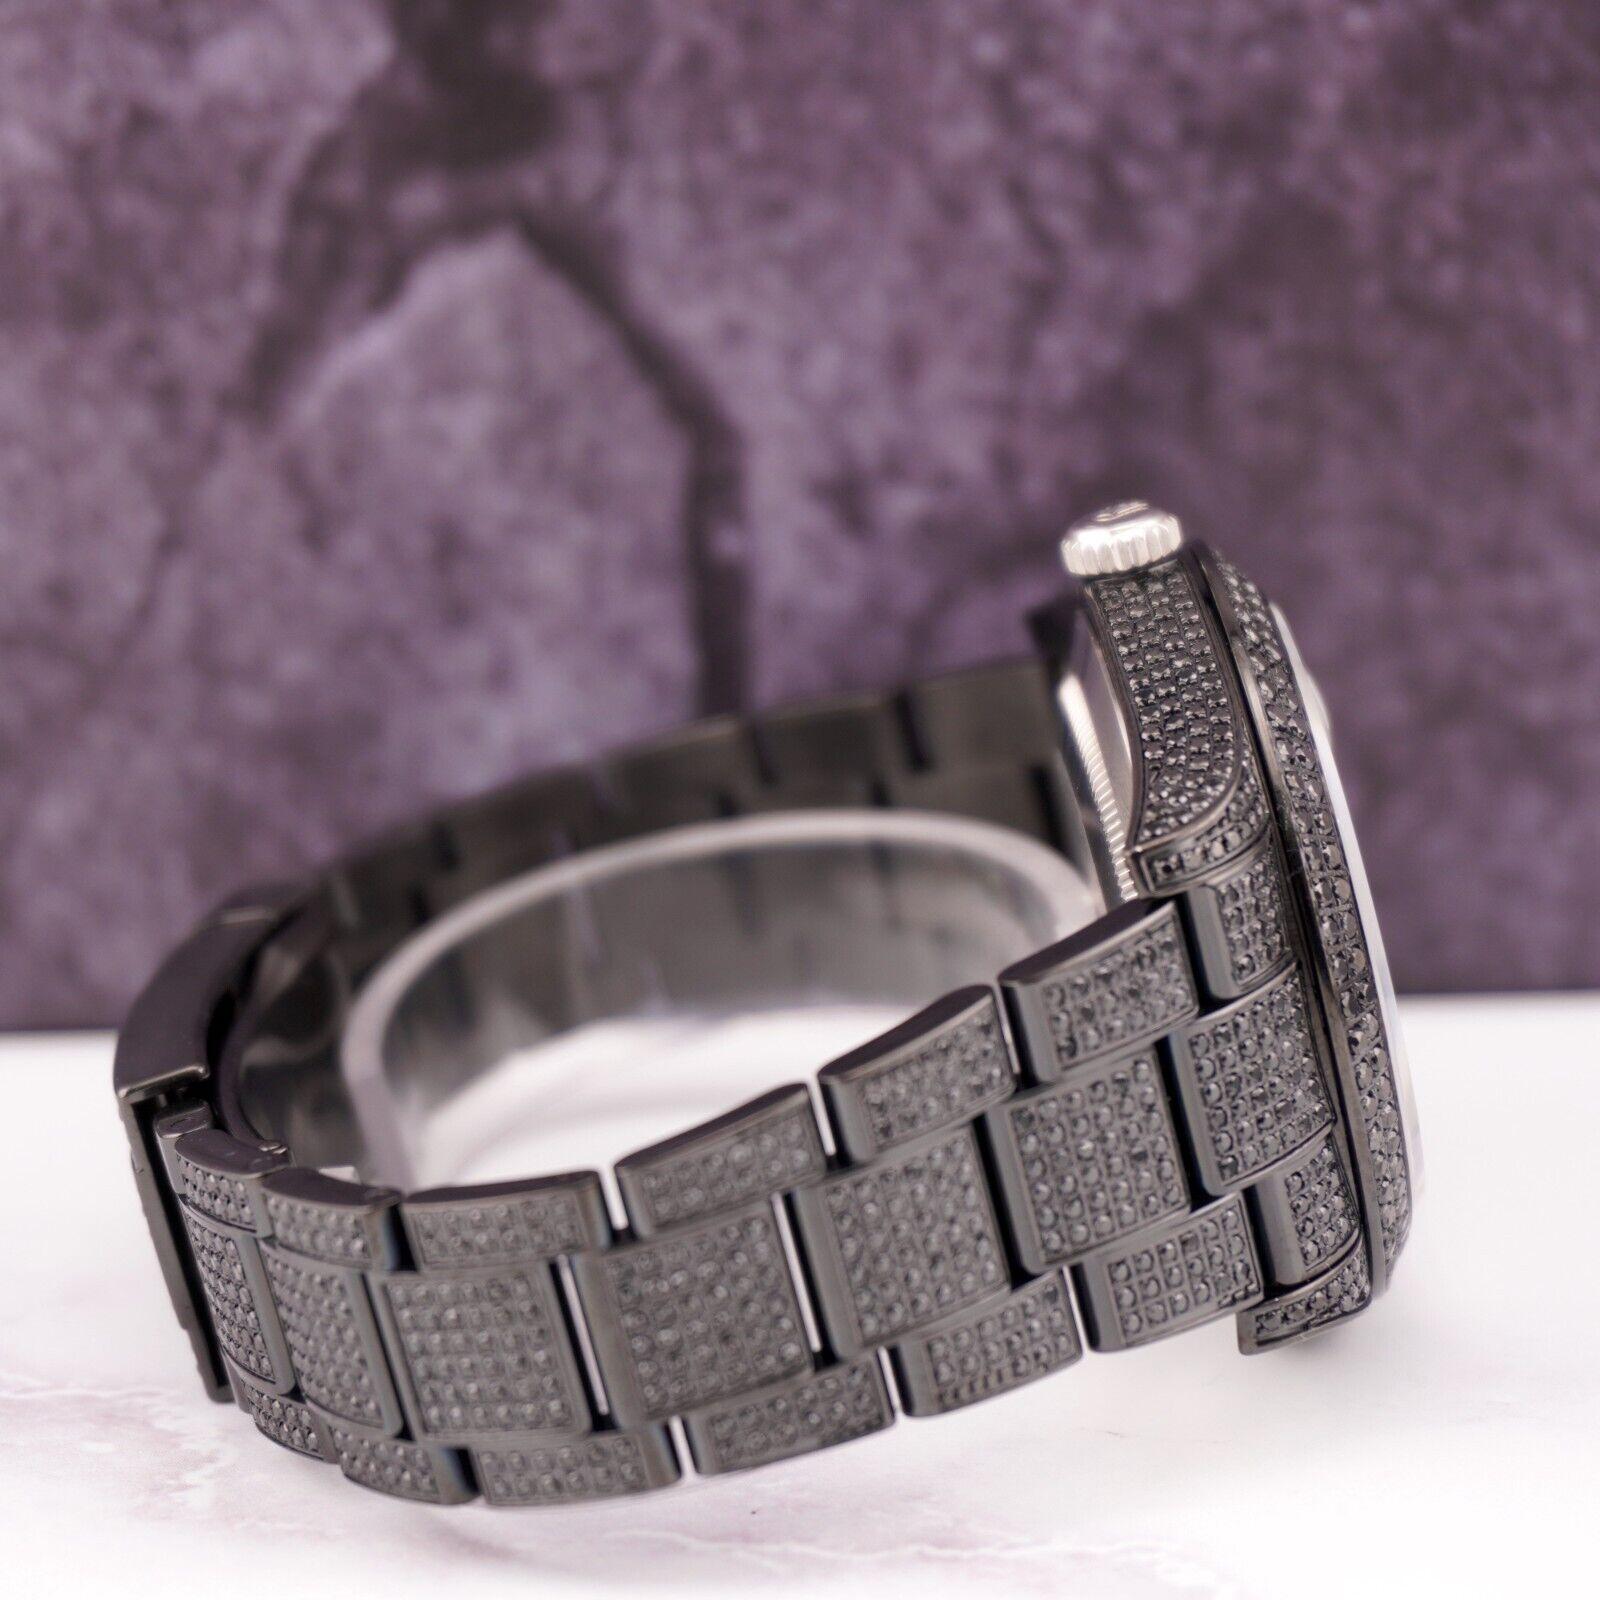 Montre Rolex Datejust 41mm personnalisée avec 10.00 carats de diamants véritables ! L'ensemble de la montre est d'origine, seuls la lunette et le cadran en diamants ont été ajoutés. L'ensemble du boîtier, du bracelet, de la boucle, de la lunette et